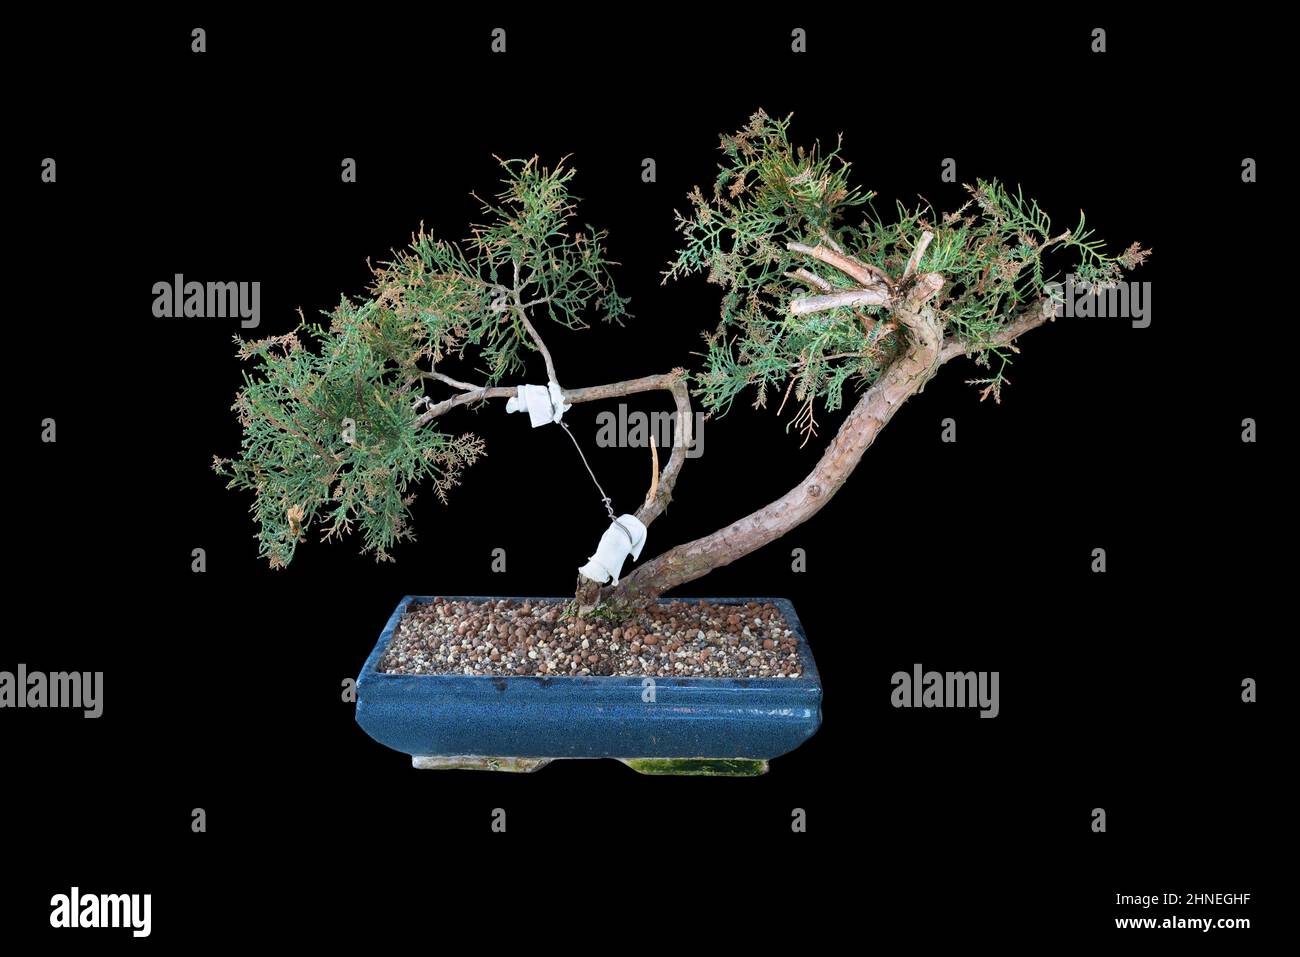 Juniperus chinensis bonsai sobre fondo oscuro, el hermoso enebro chino, una de las coníferas más utilizadas para este tipo de arte Foto de stock